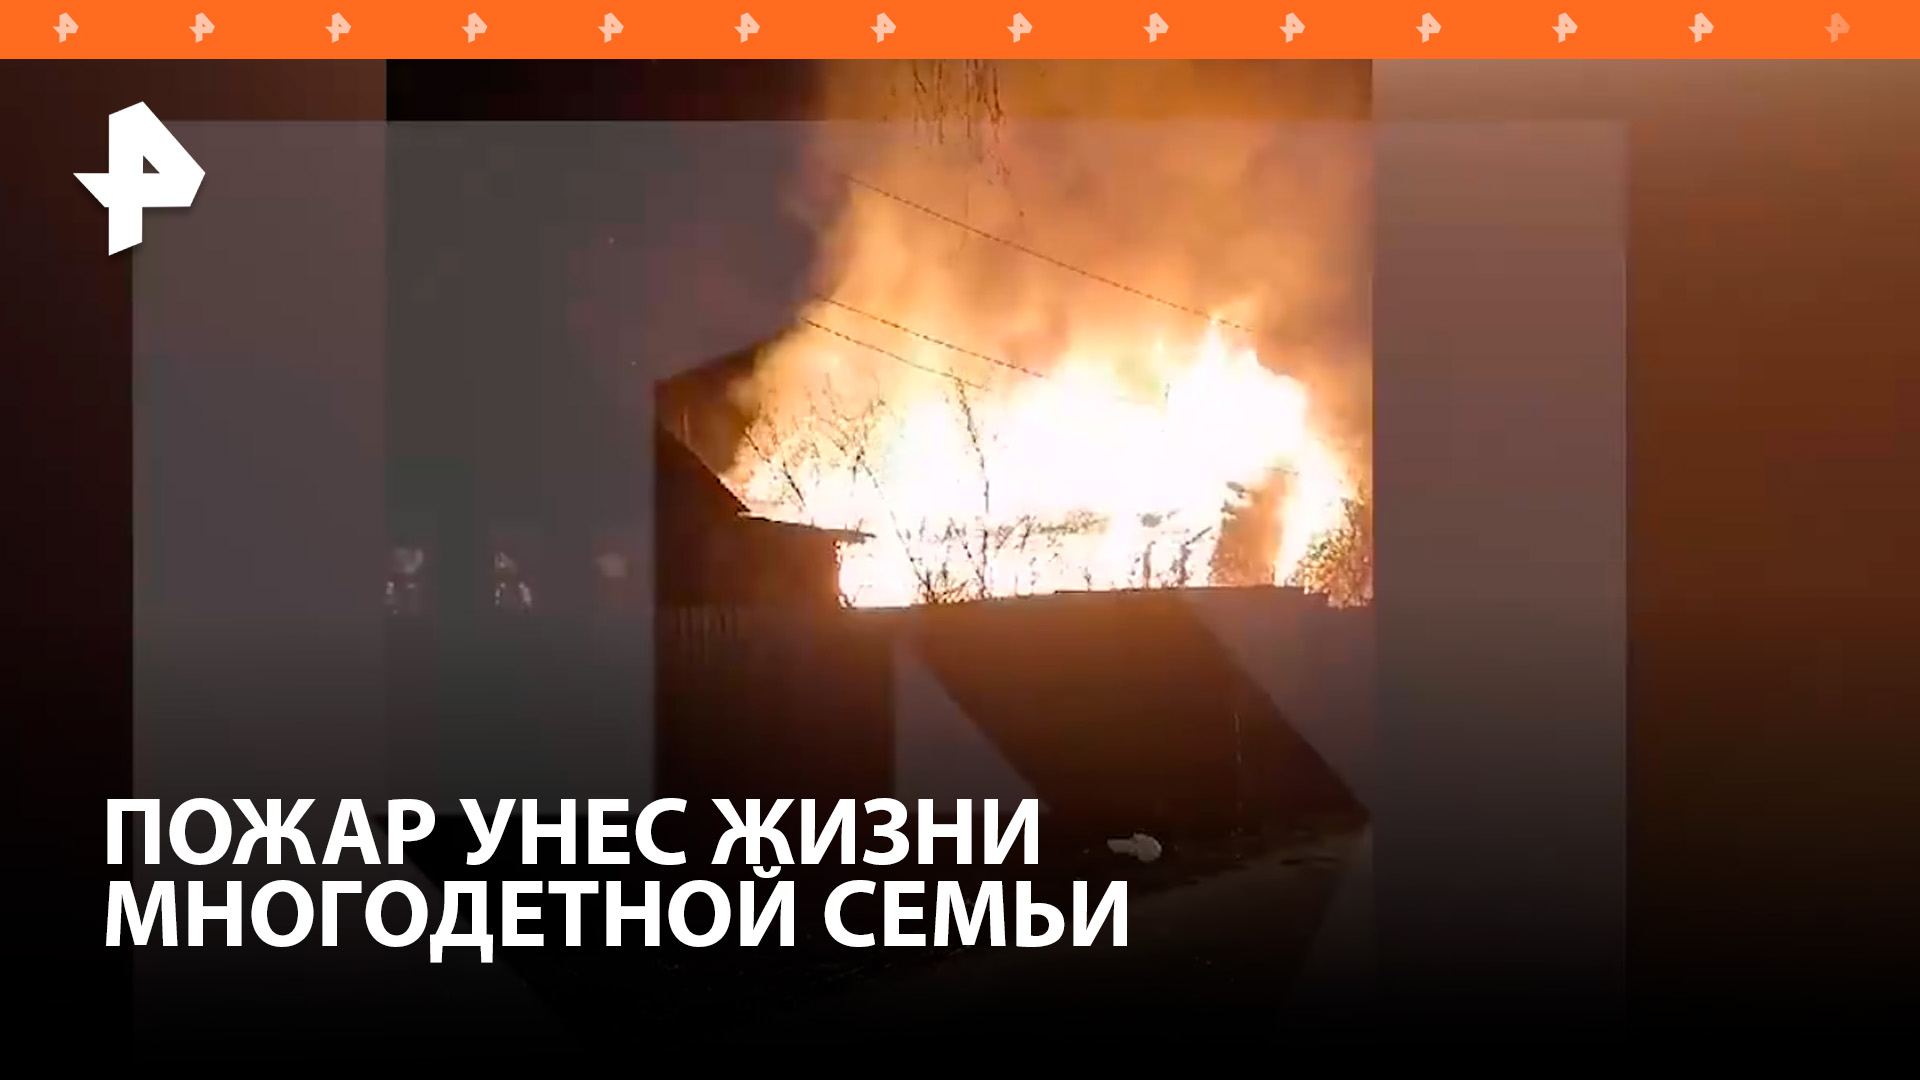 Пожар застал многодетную семью из восьми человек в Подмосковье. Шестеро погибли, включая 4-х детей